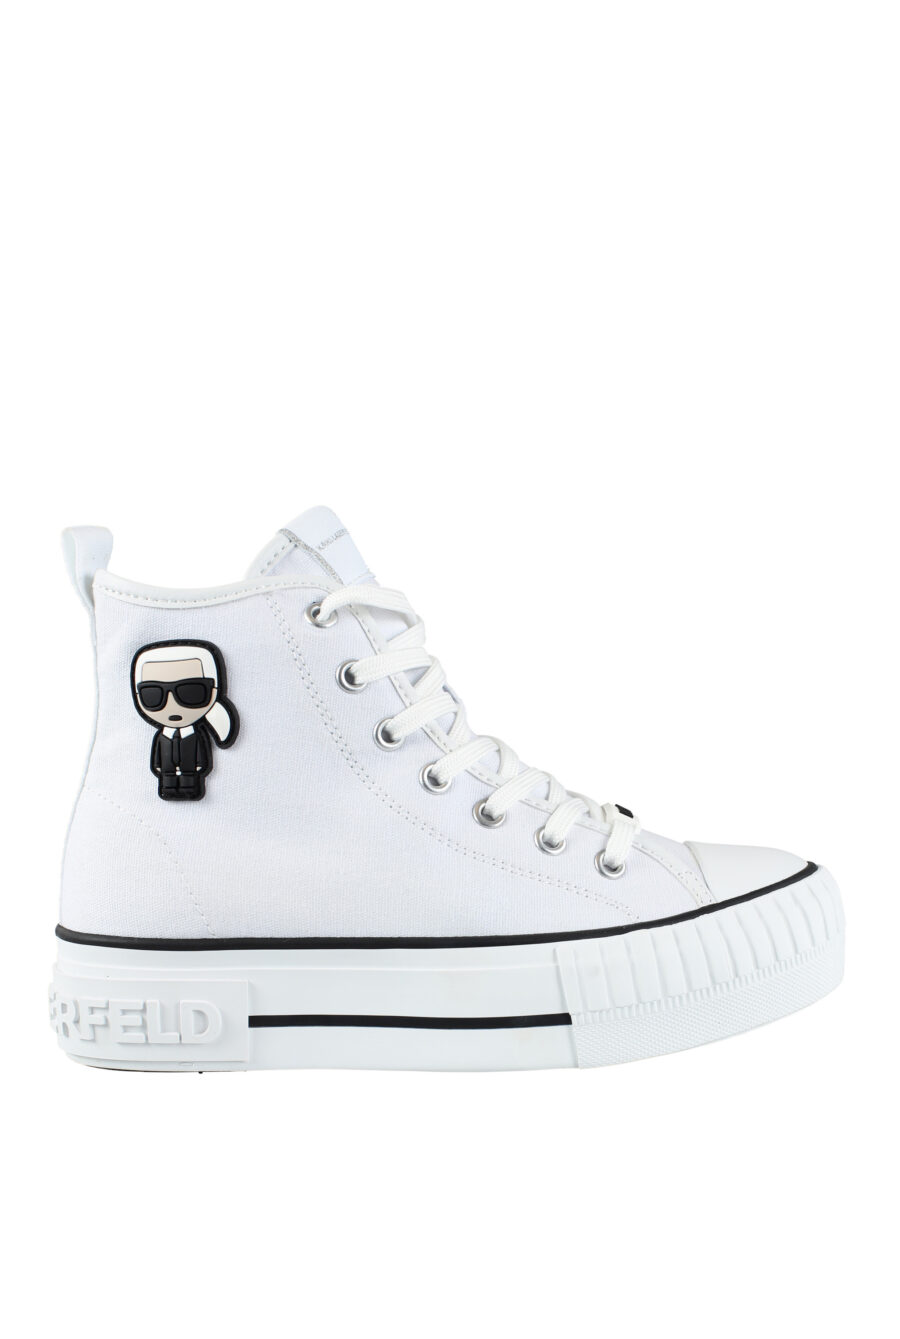 Zapatillas altas blancas estilo converse con logo "karl" en goma - IMG 9570 1